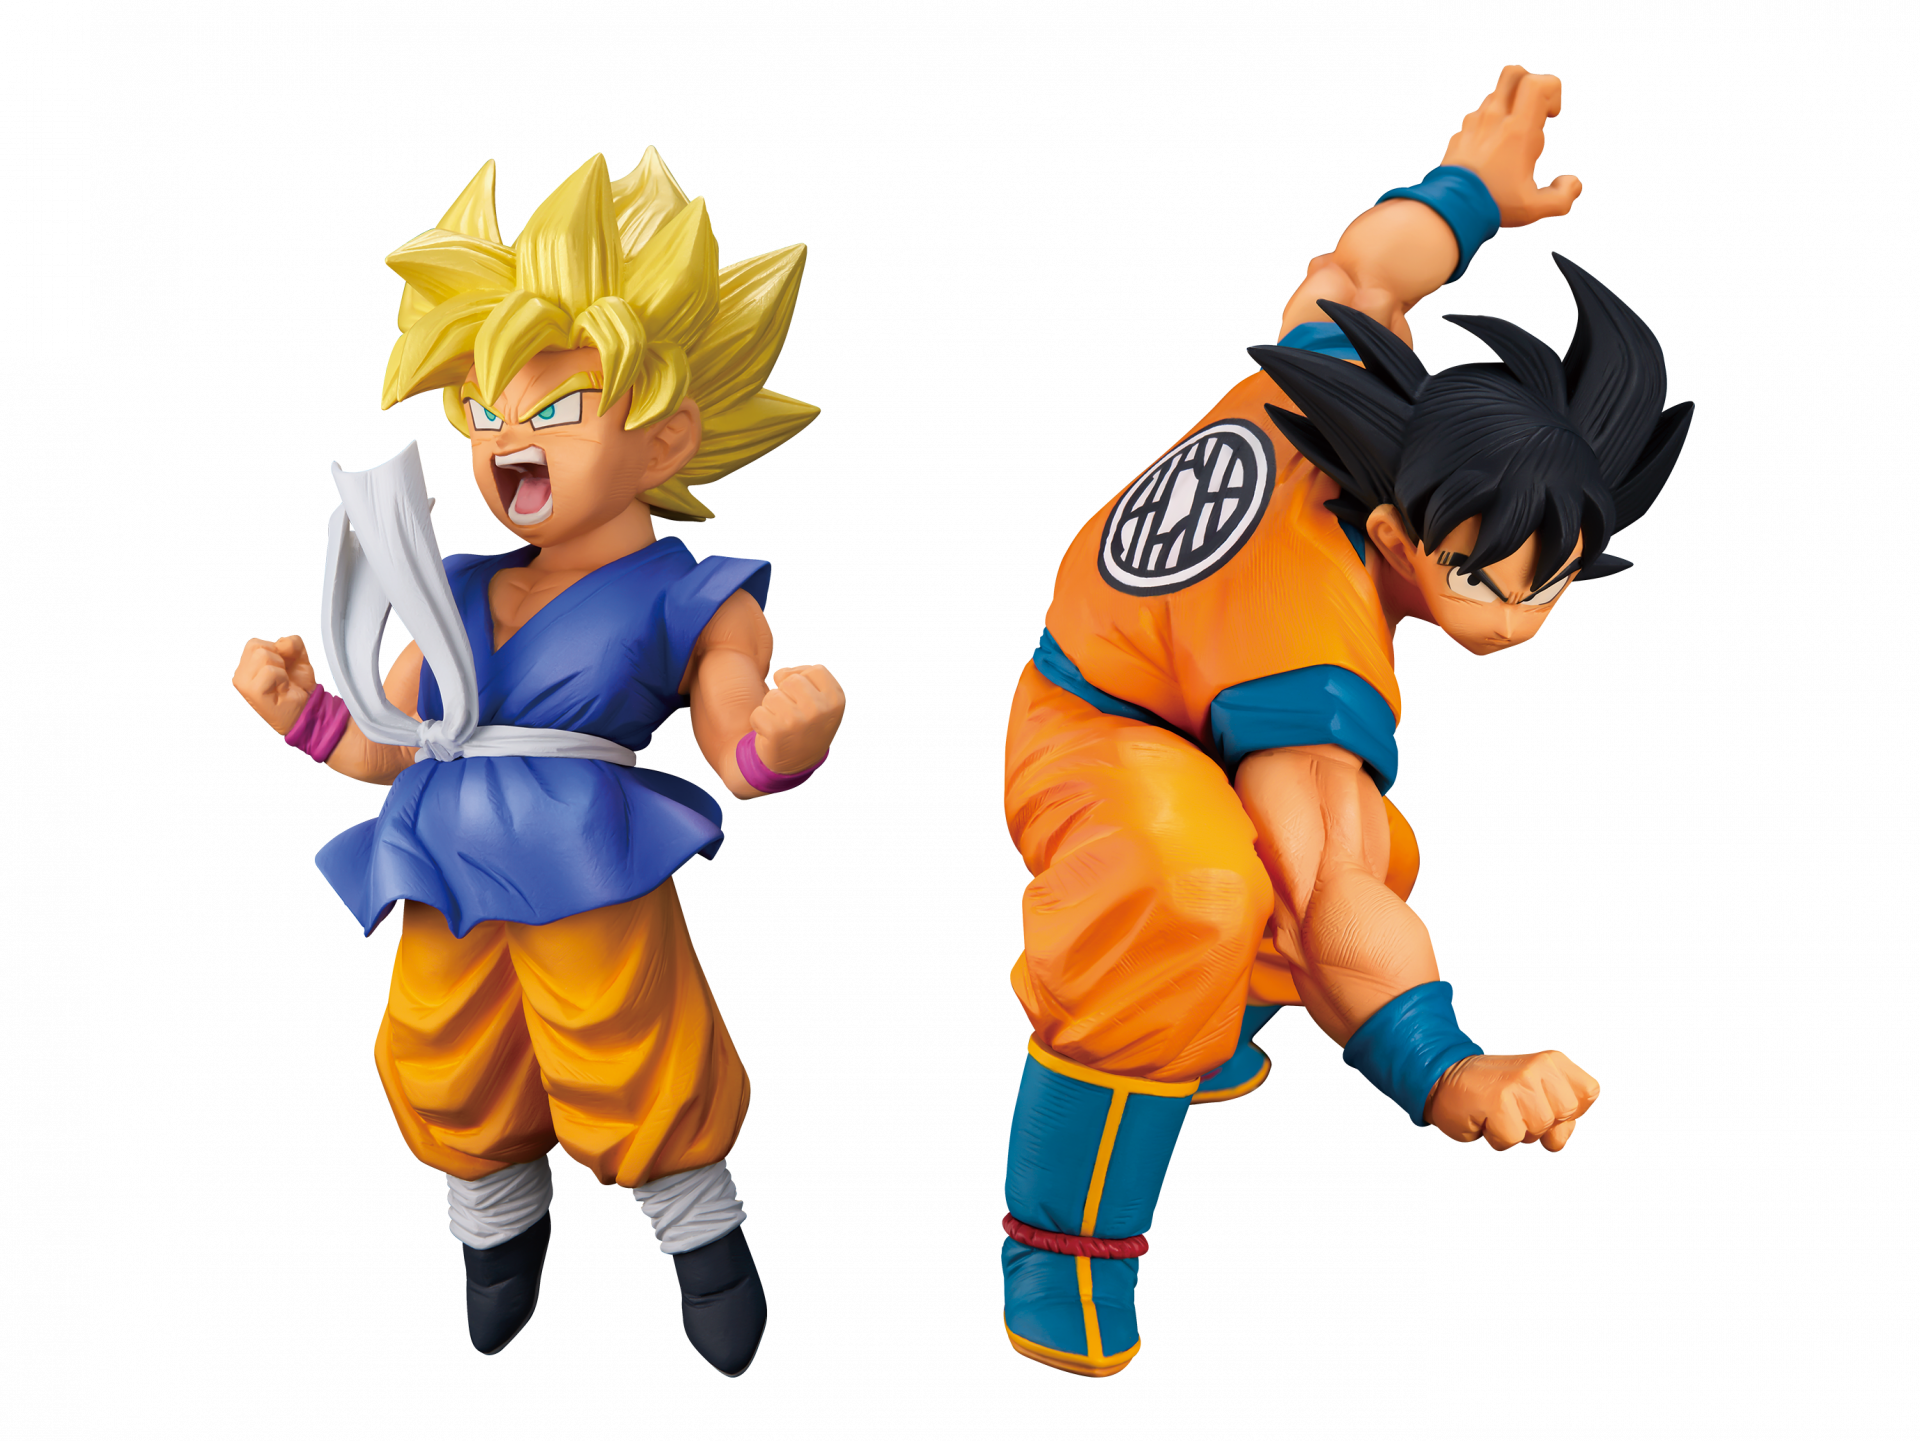 Goku-FES!! Nr.16! Super Saiyan -Goku (Kind) & Schwarzhaar-Goku Treten Sie der "Goku FES!!" Serie! Demnächst in Game Centern erhältlich!